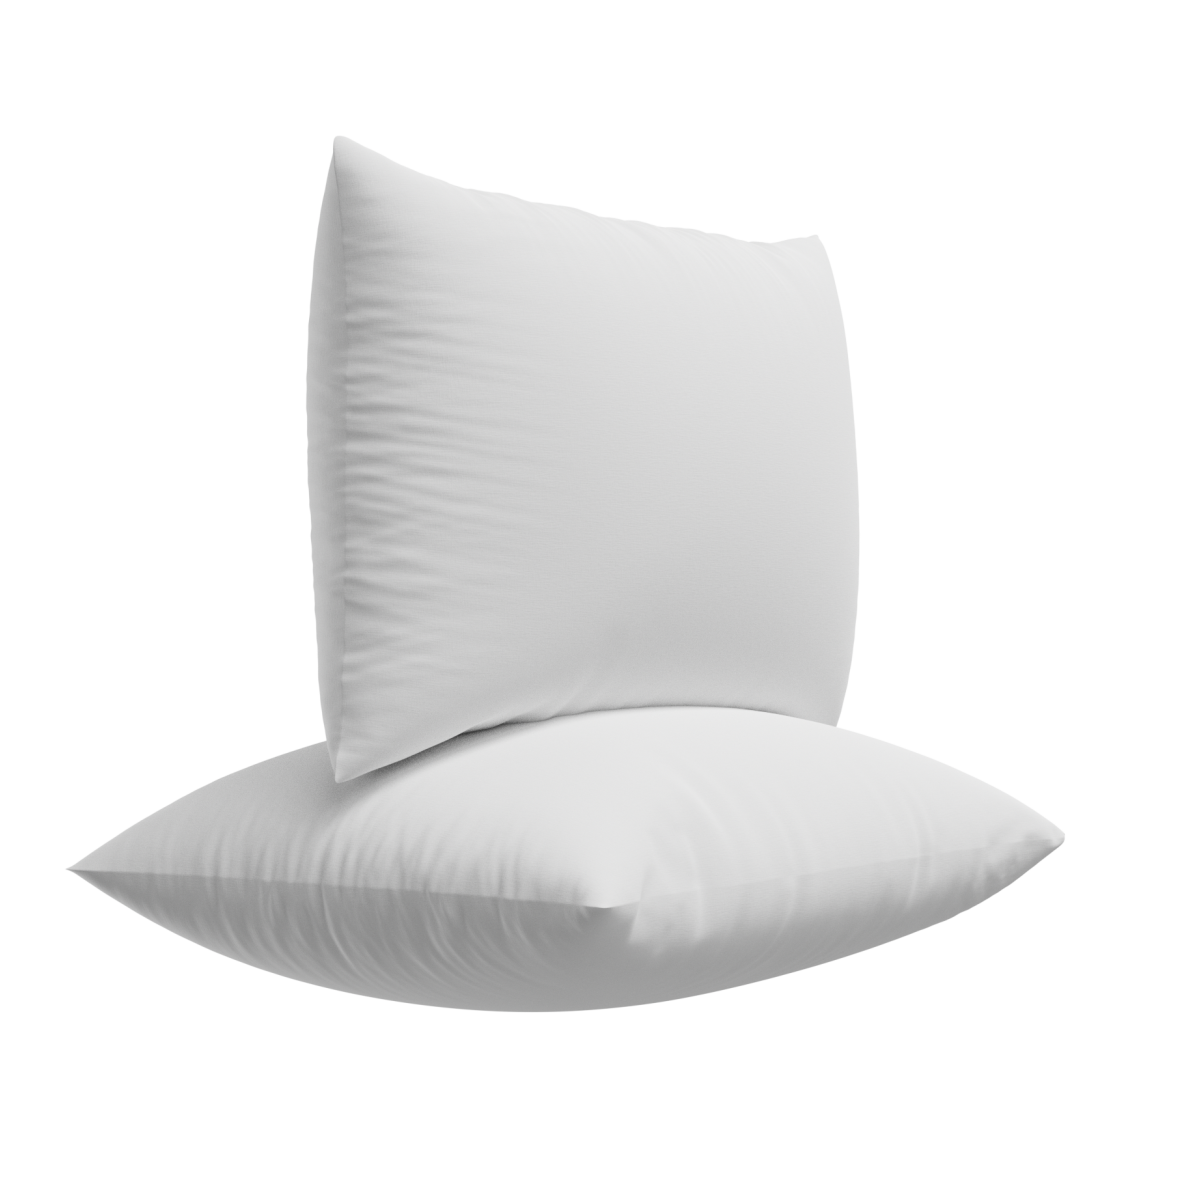 Utopia Bedding Throw Pillows Insert 4PK 22x22 and 4PK 20x20 Inches (White)